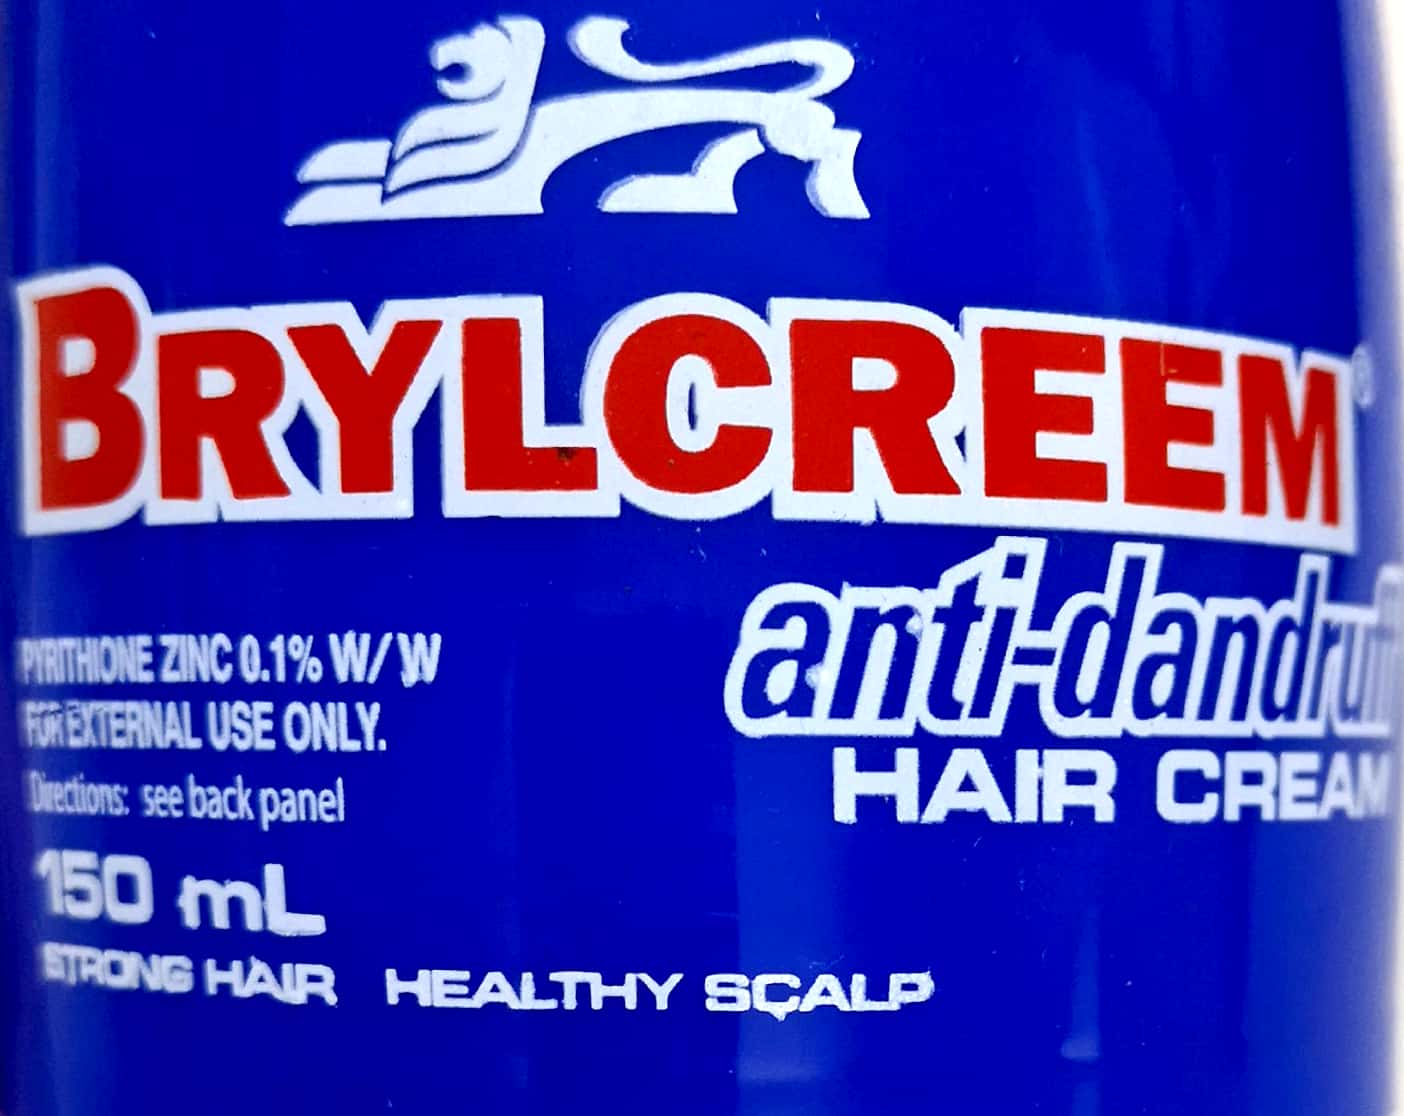 Brylcreem anti-dandruff hair cream 150ml - Pakuranga Pharmacy